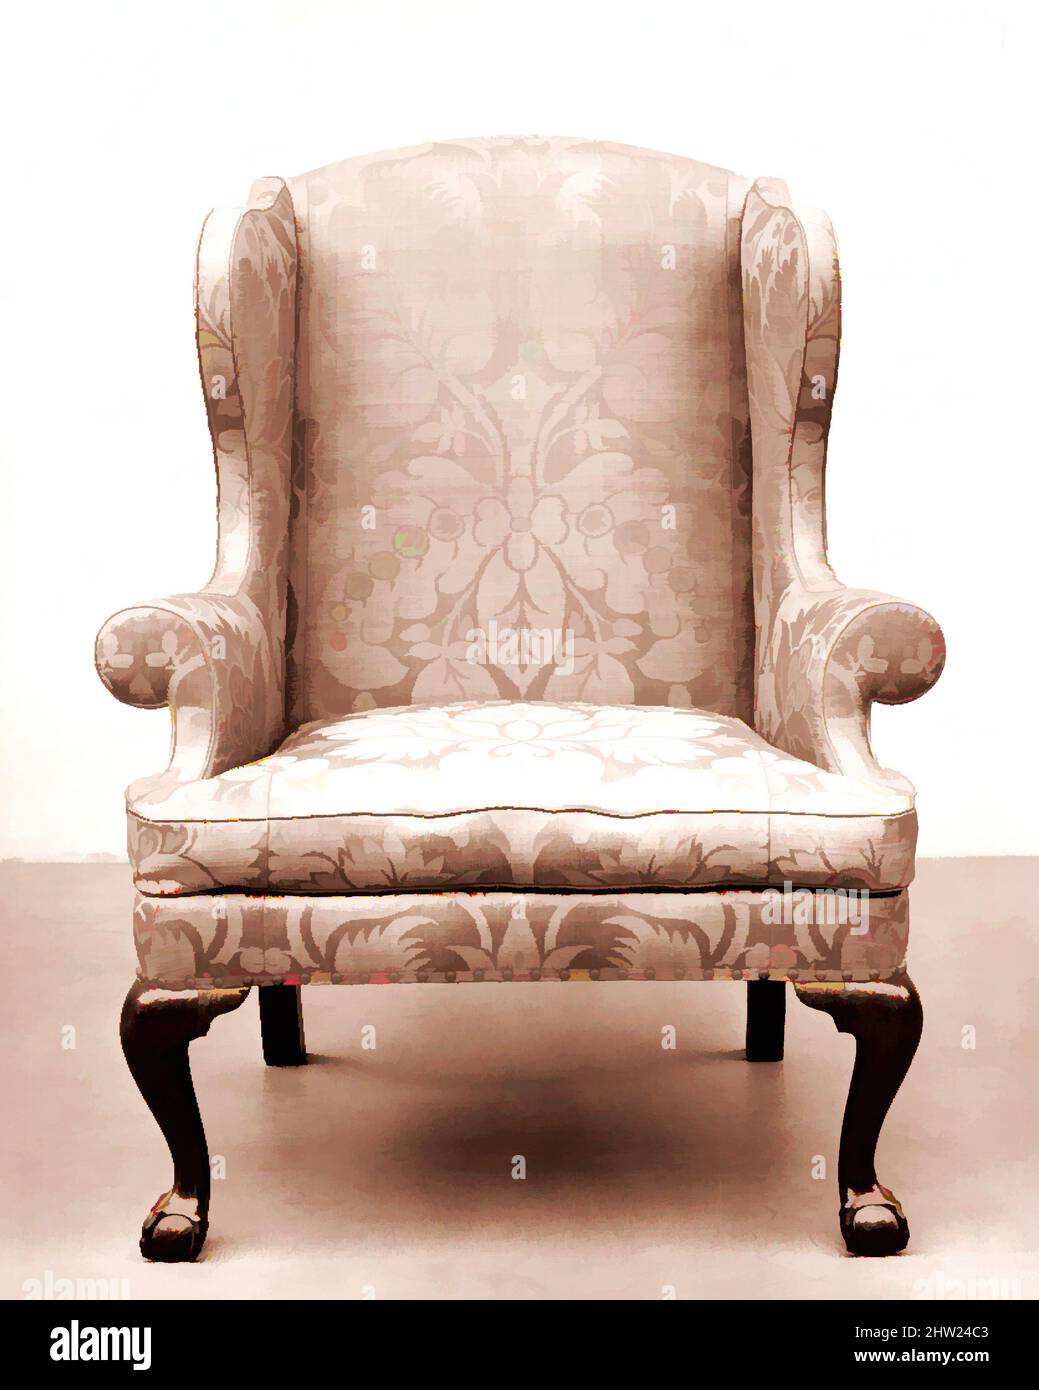 Art Inspired by Easy Chair, 1755–90, Made in New York, New York, USA, American, Walnut, Weiße Eiche, weiße Kiefer, Tulpenpappel, 44 1/8 x 34 1/2 x 26 3/8 Zoll (112,1 x 87,6 x 67 cm), Möbel, ein Sessel war das Produkt von zwei verschiedenen Handwerkern. Der Stuhlhersteller baute die von Artotop modernisierten, klassischen Werke mit einem Schuss Modernität. Formen, Farbe und Wert, auffällige visuelle Wirkung auf Kunst. Emotionen durch Freiheit von Kunstwerken auf zeitgemäße Weise. Eine zeitlose Botschaft, die eine wild kreative neue Richtung verfolgt. Künstler, die sich dem digitalen Medium zuwenden und die Artotop NFT erschaffen Stockfoto